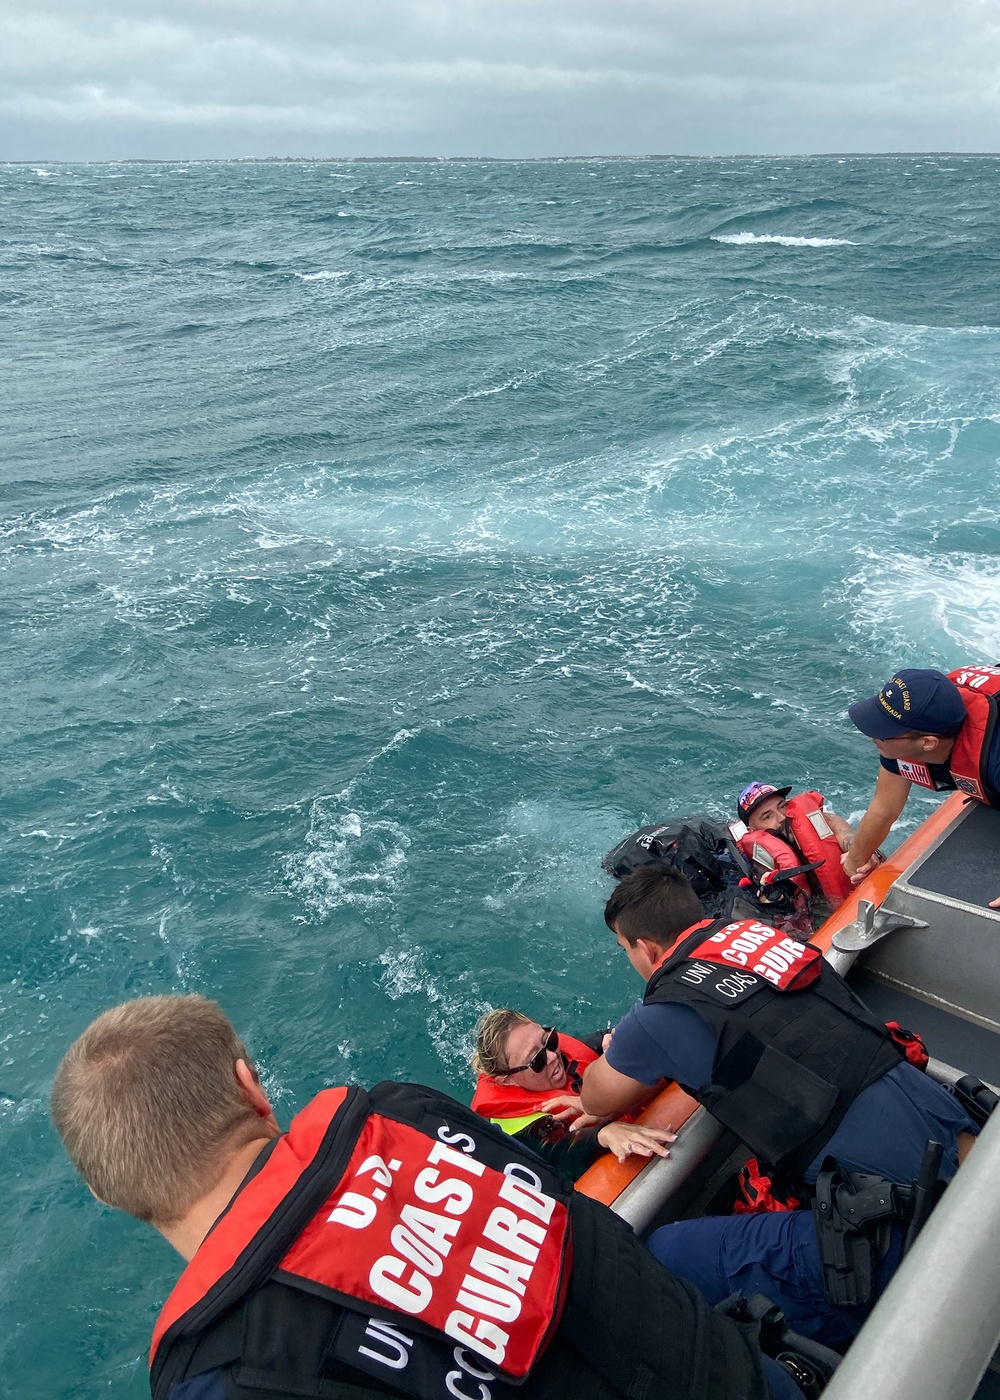 Coast Guard rescues 3 people vessel taking on water near Windley Island